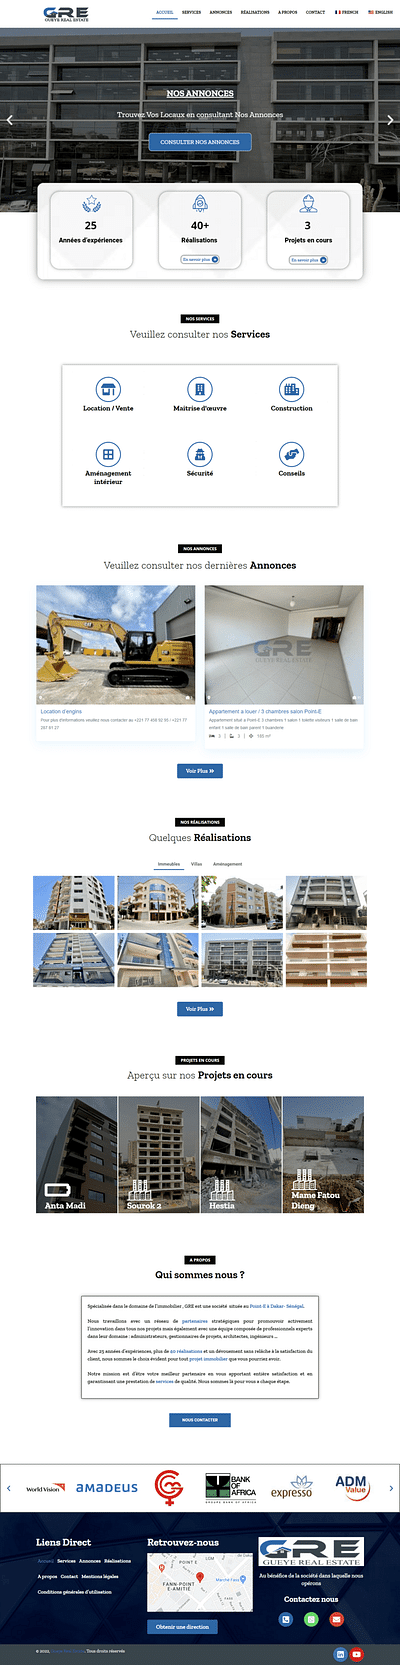 Création du site web Gueye Real Estate - Création de site internet